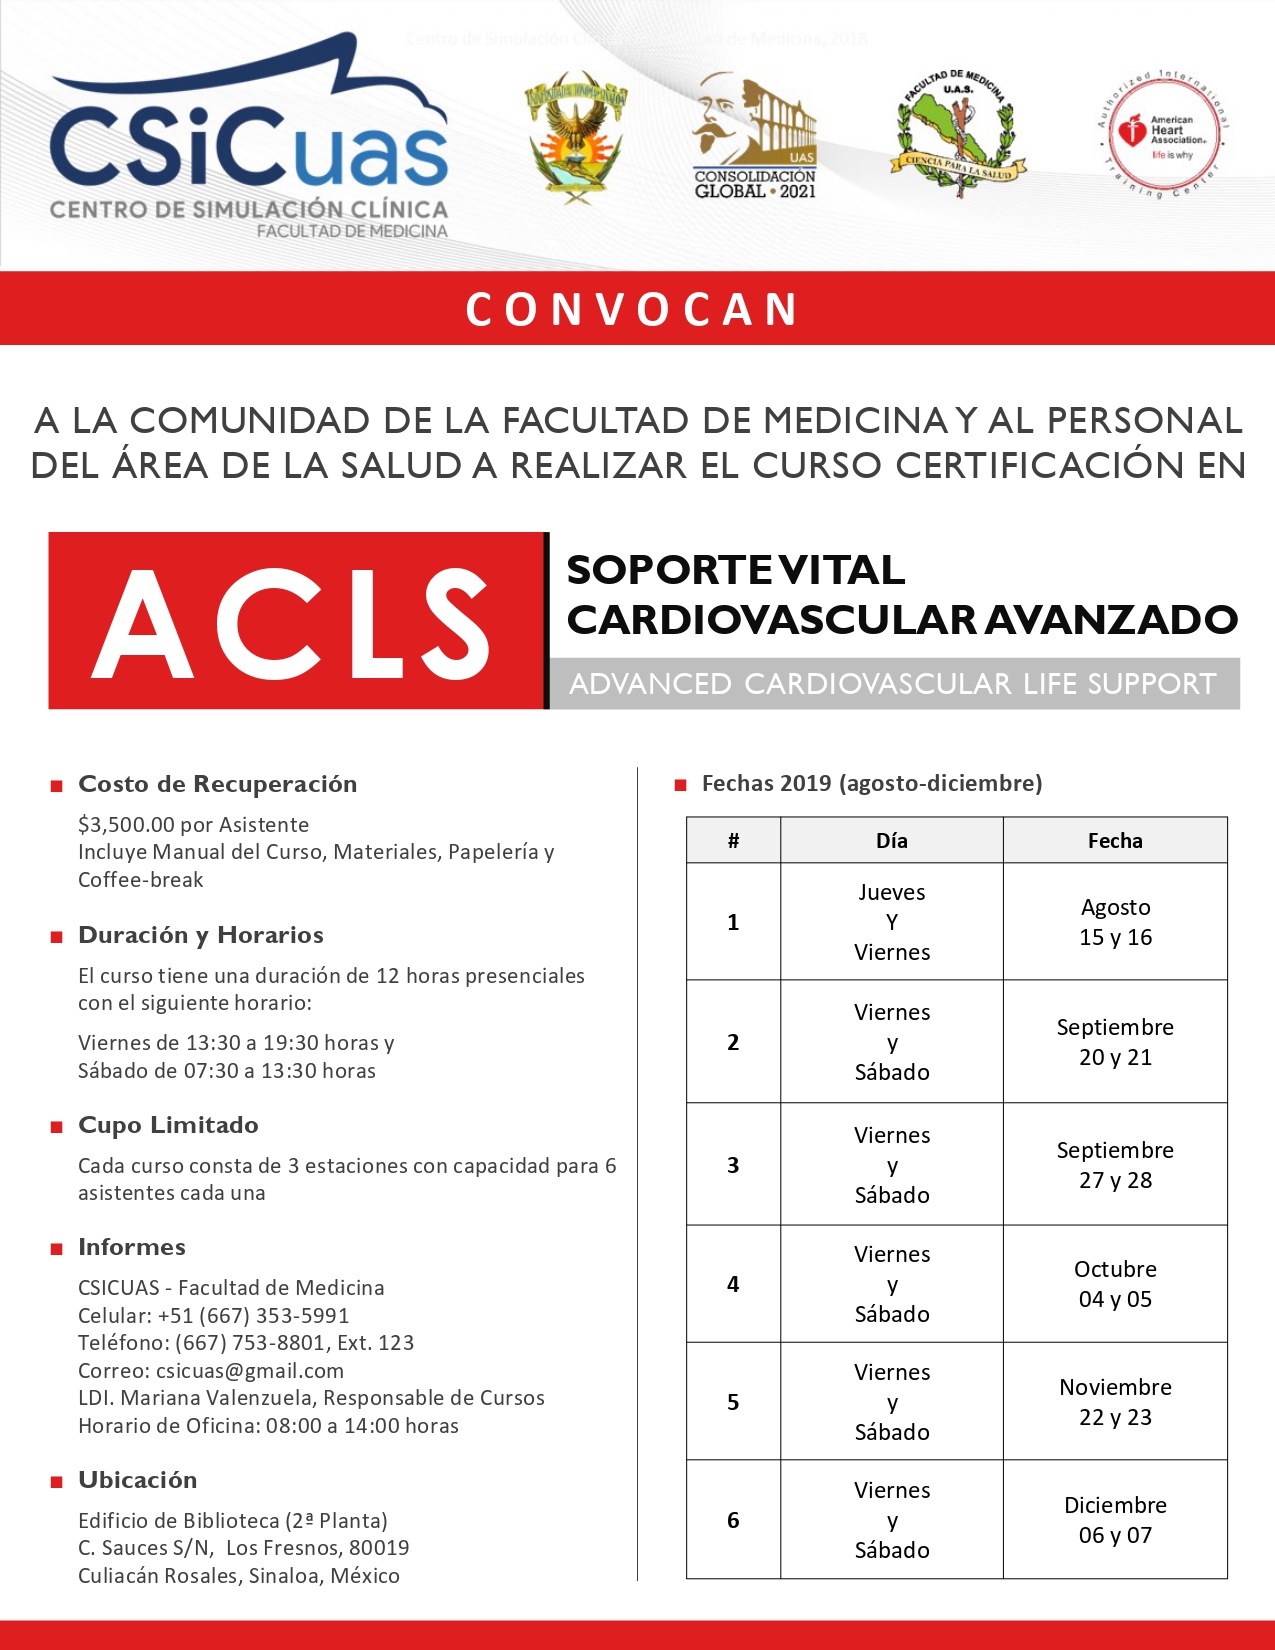 Curso Certificación en ACLS (Advanced Cardiovascular Life Support) Soporte Vital Cardiovascular Avanzado